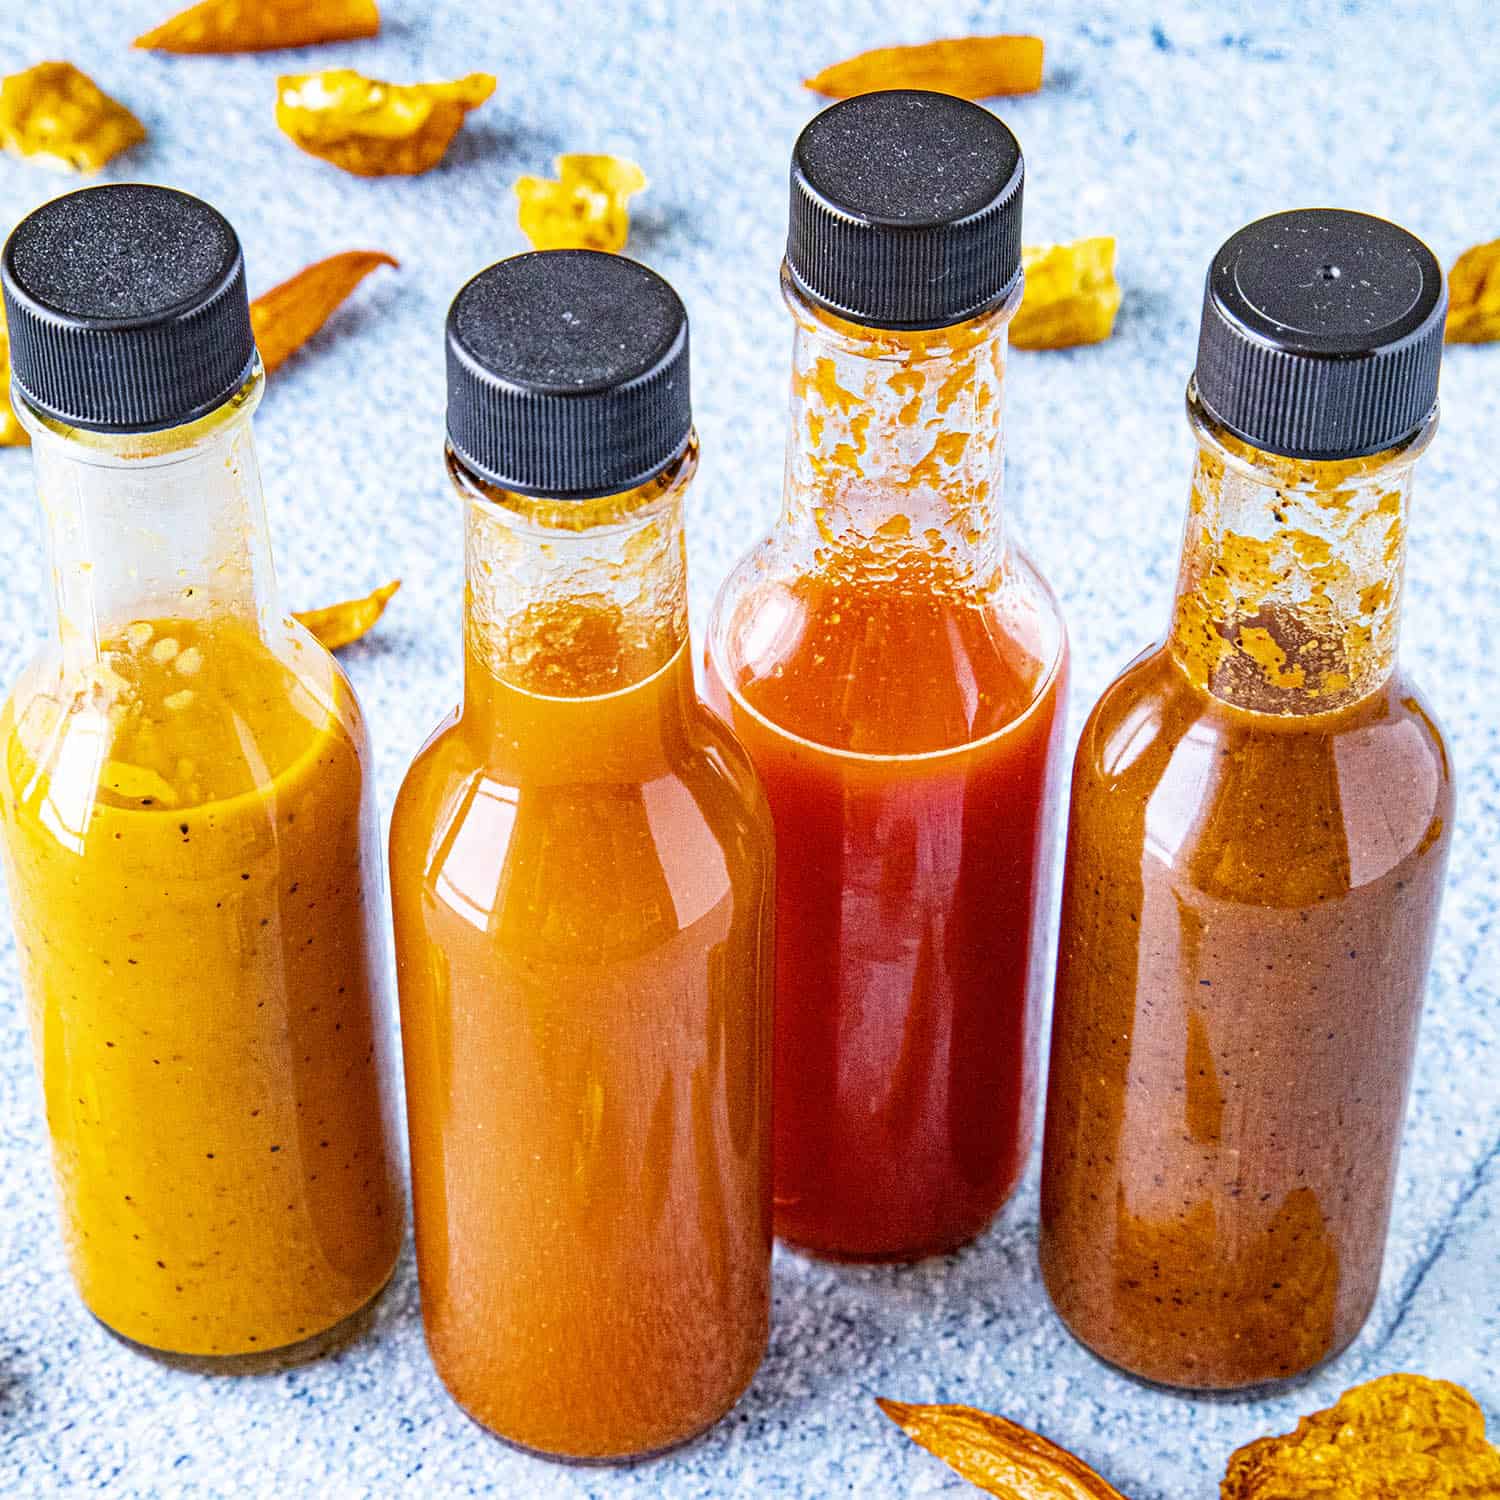 Carolina Reaper Hot Sauce Recipe Chili Pepper Madness, 48% OFF